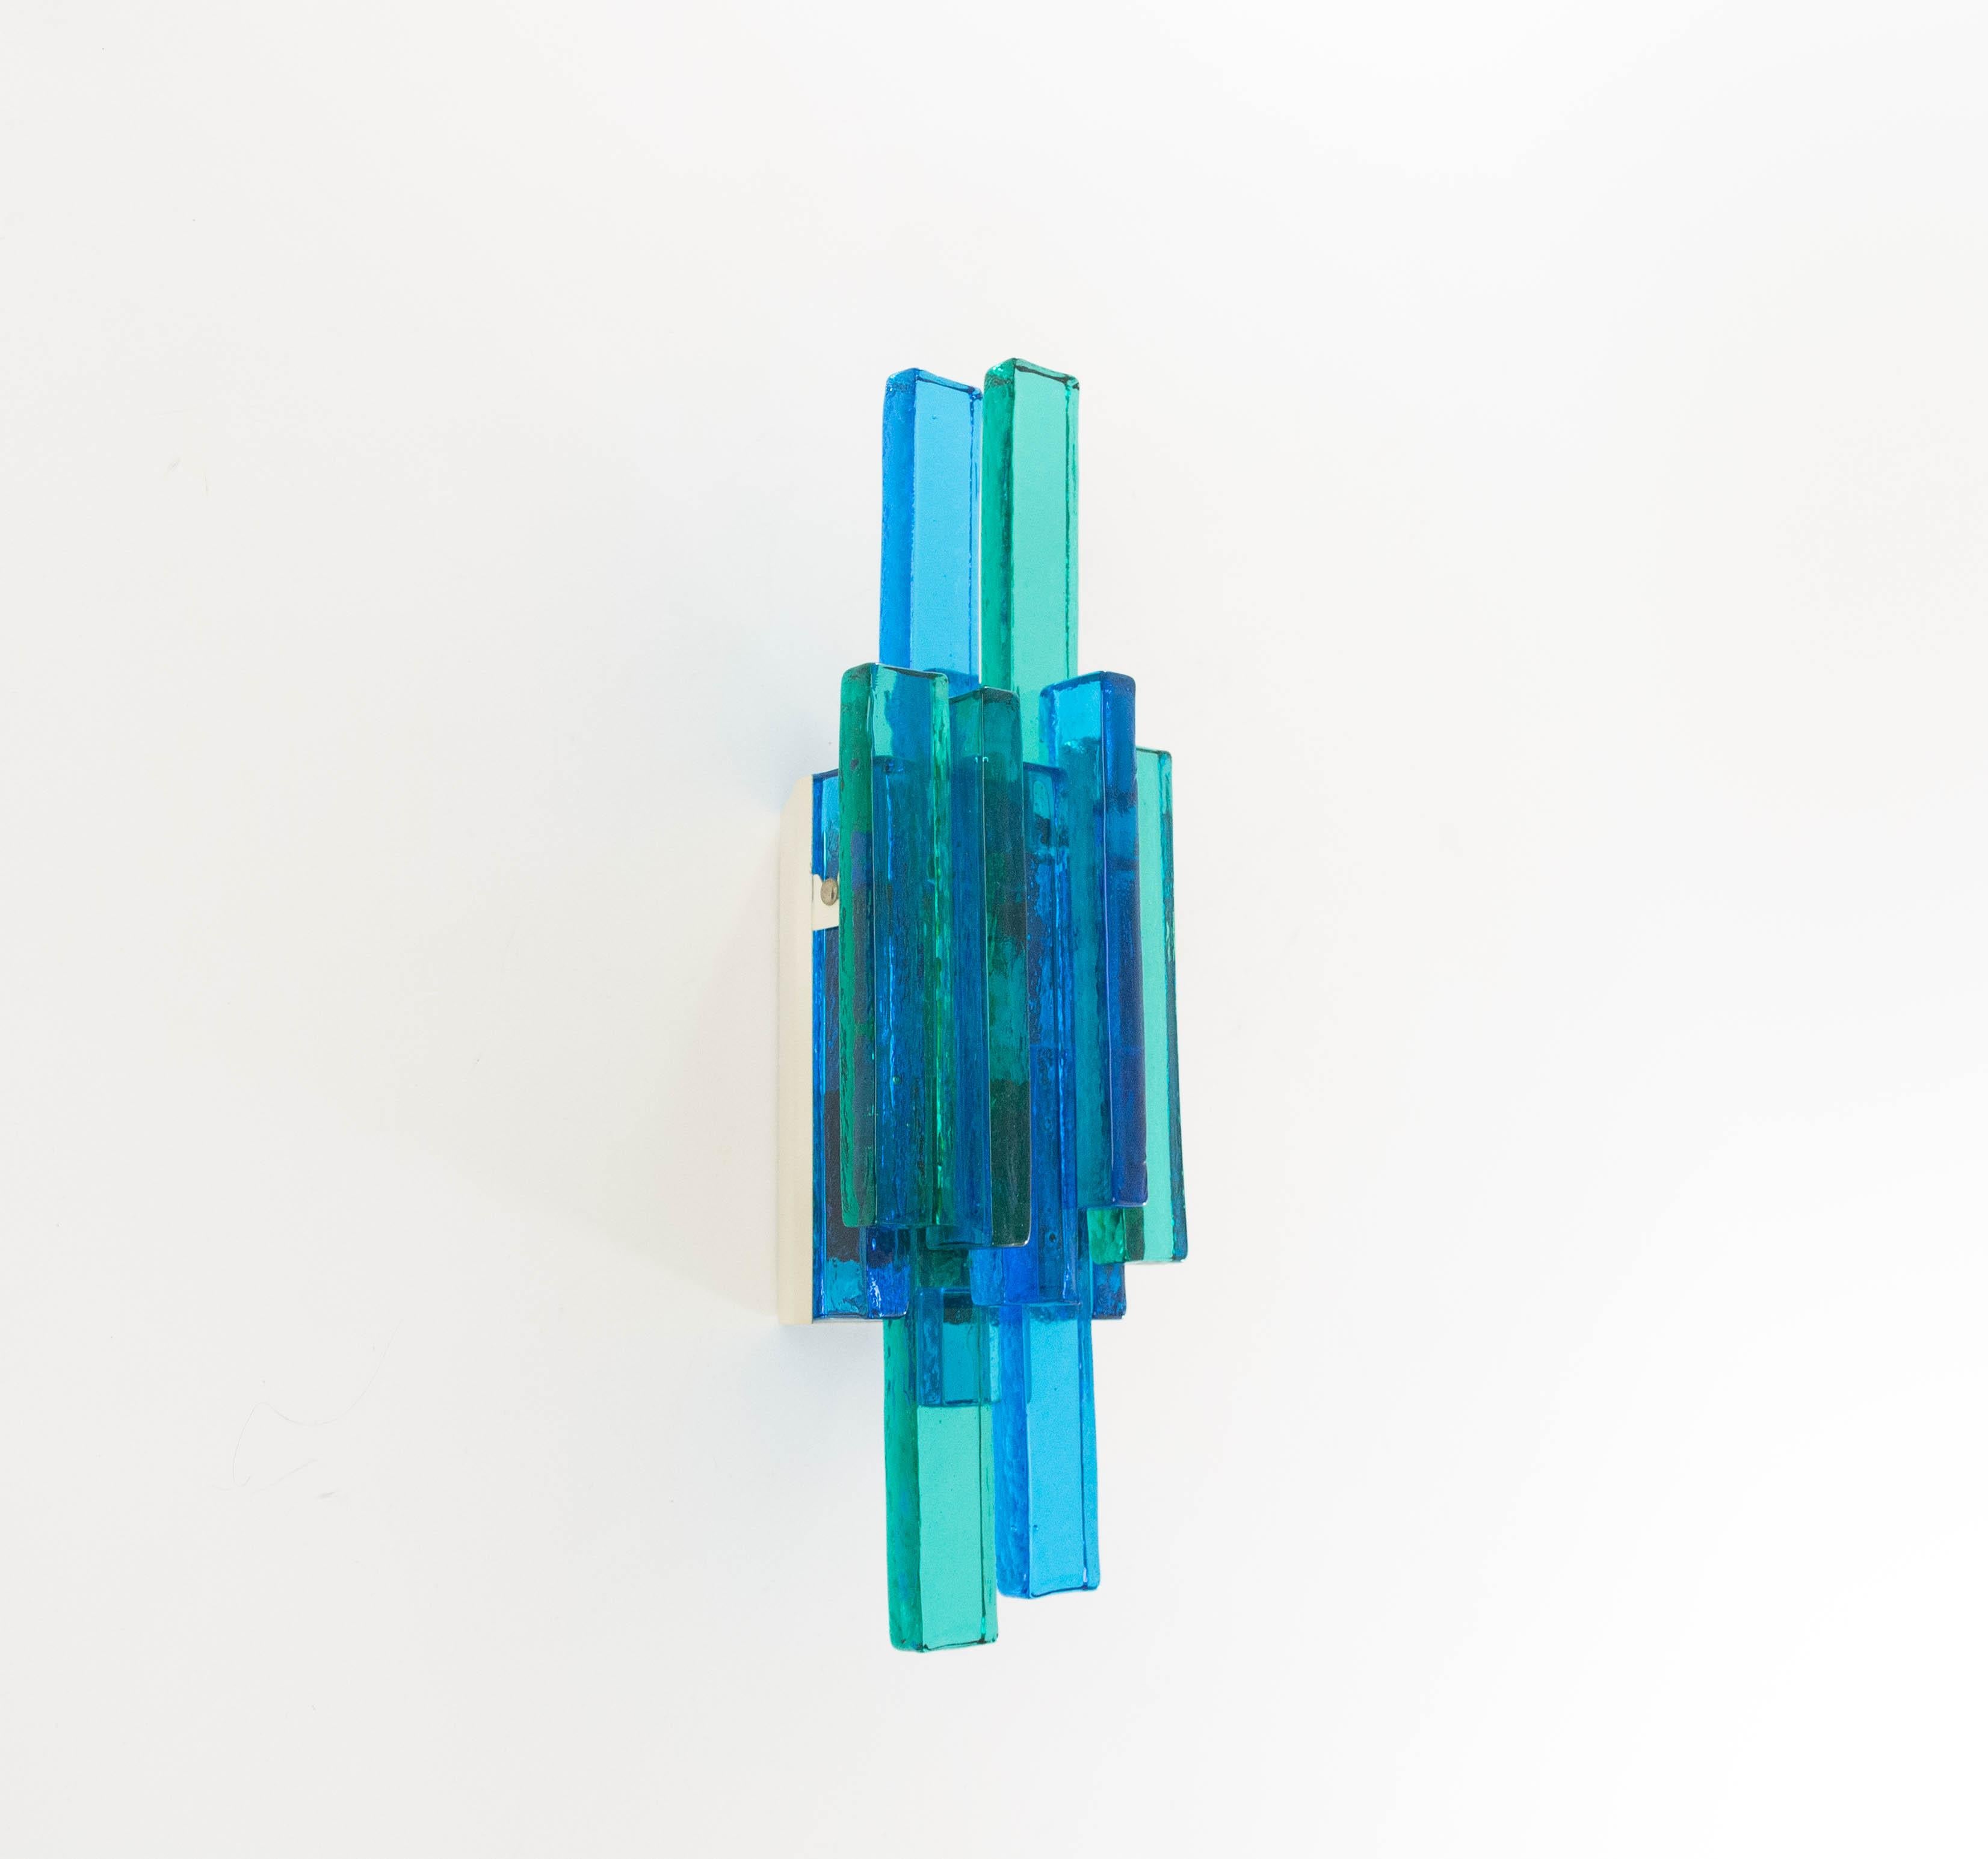 Applique Skulptur en verre bleu, conçue par Svend Aage Holm Sørensen pour sa propre entreprise, Holm Sørensen & Co. Cette lampe est magnifiquement conçue avec des verres de couleur marine et bleu foncé, ce qui lui confère un aspect saisissant.

La